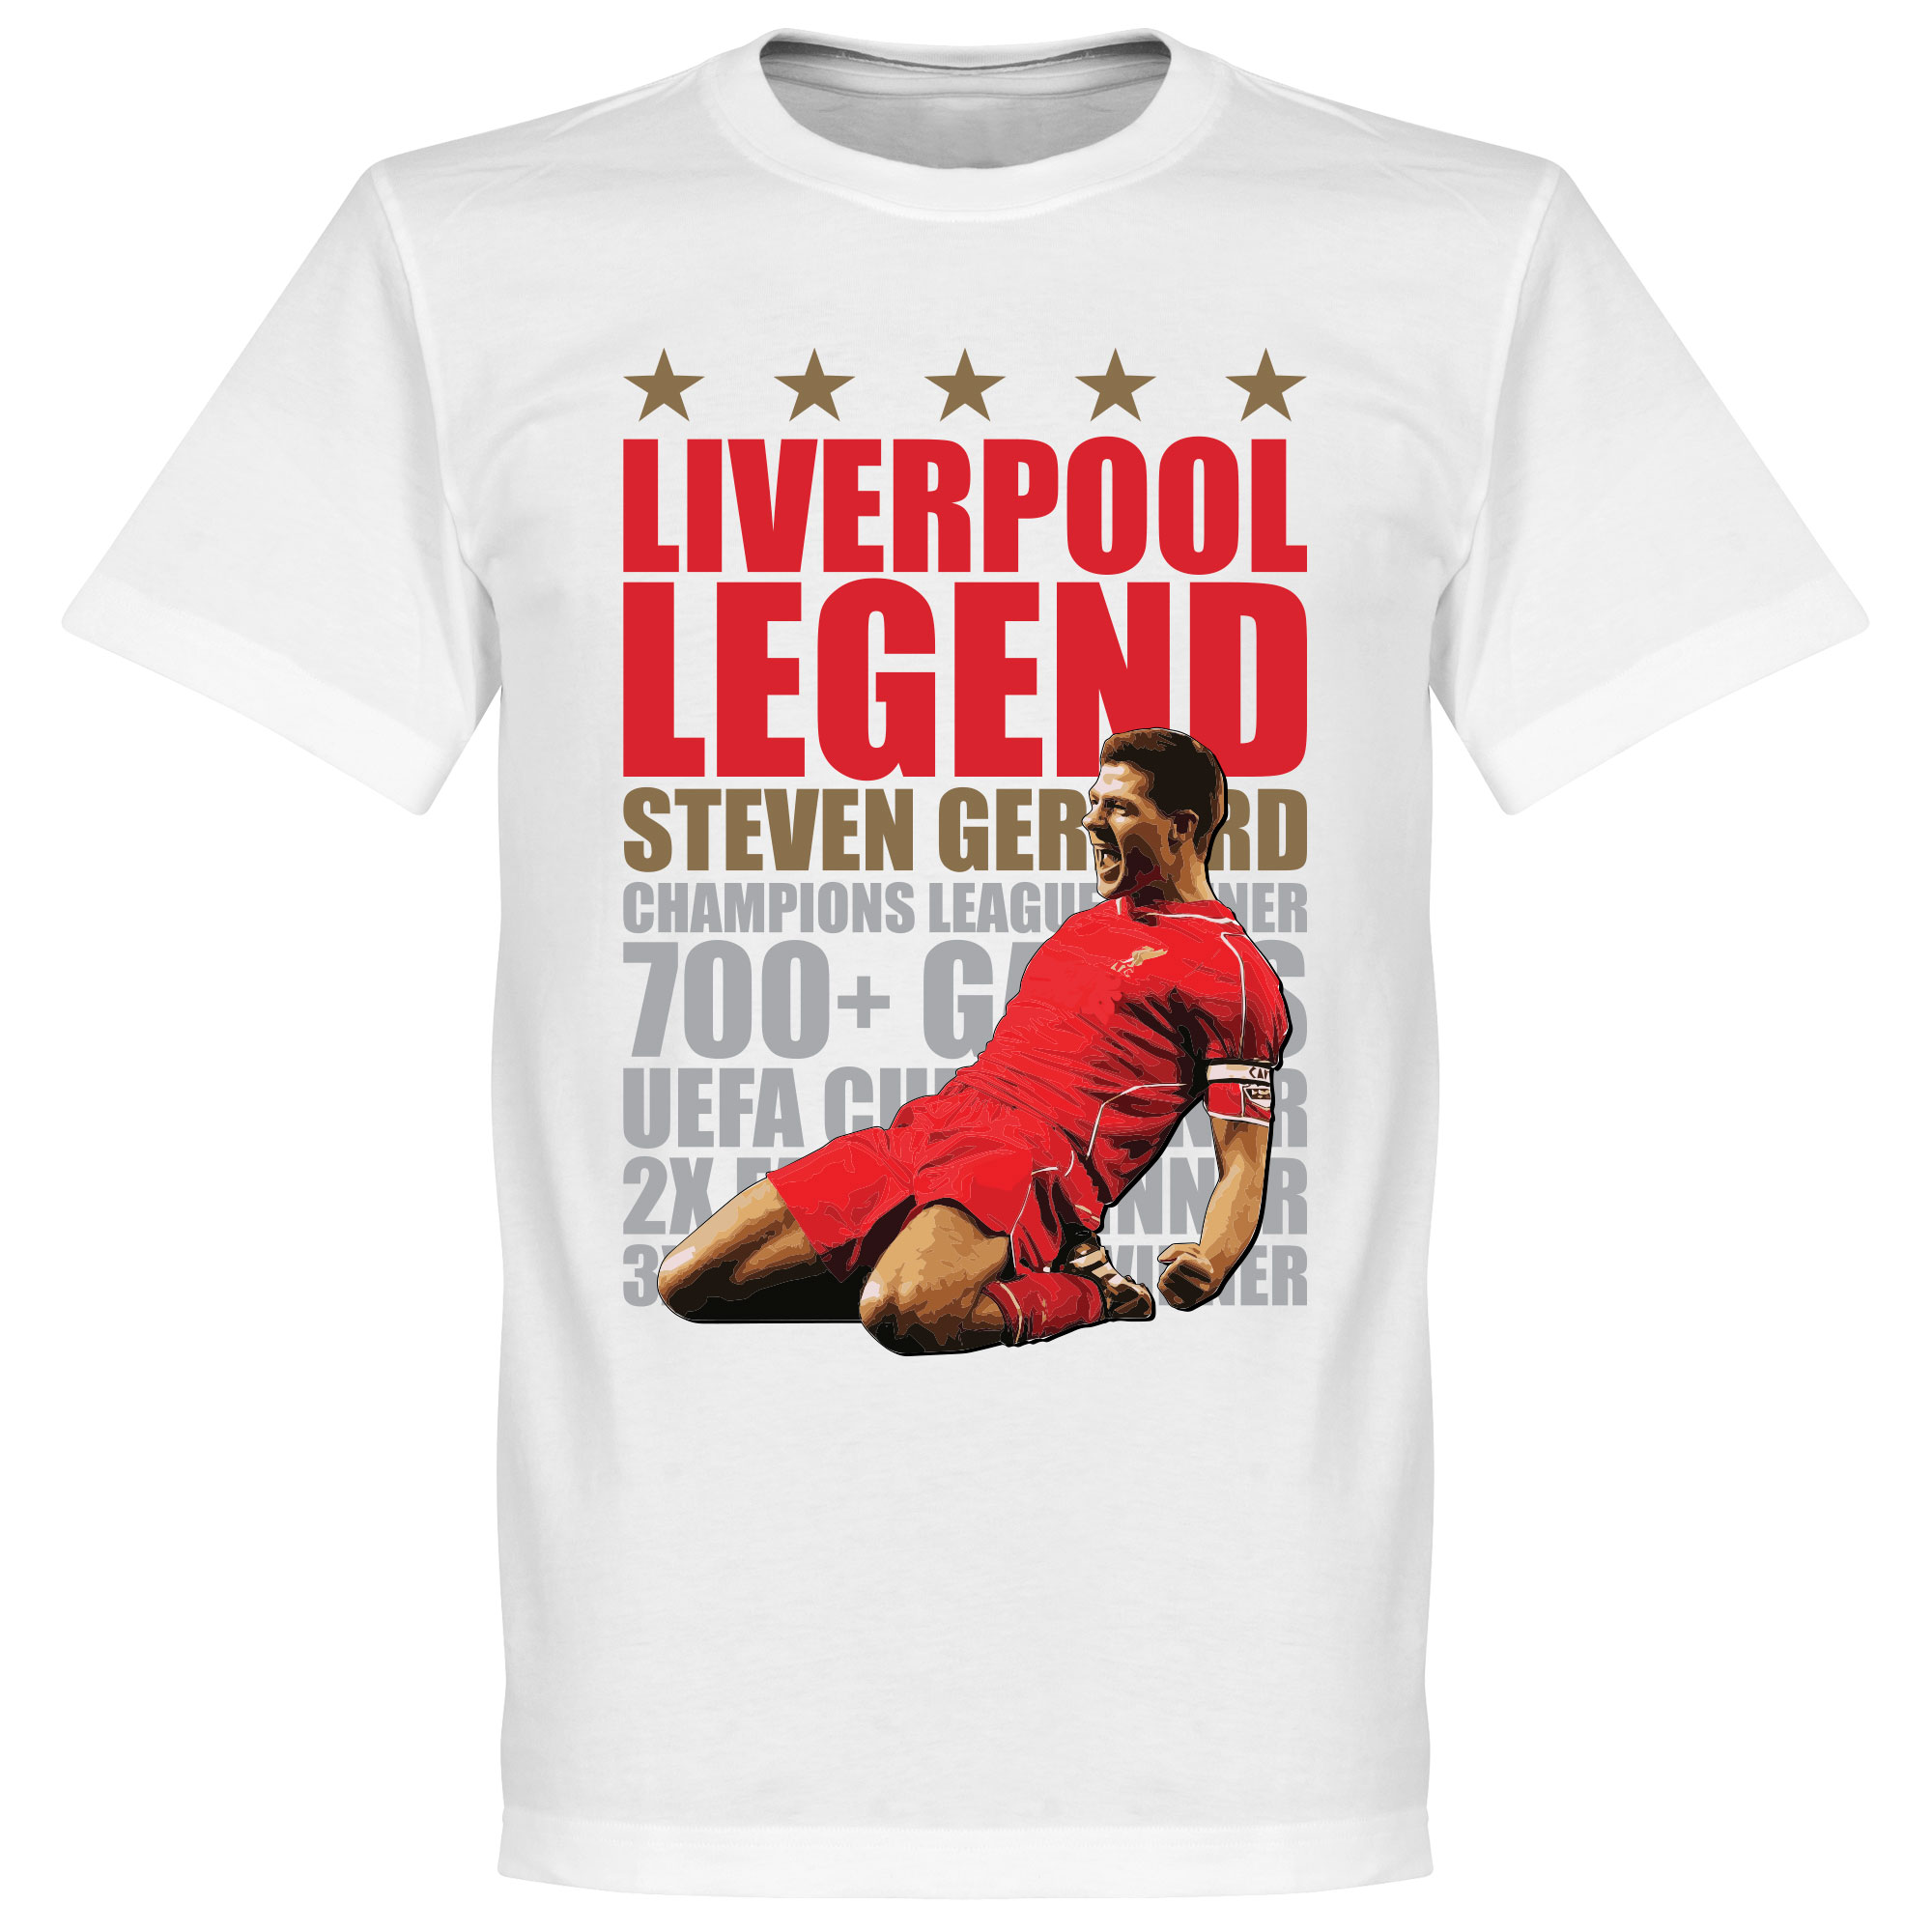 Steven Gerrard Legend T-Shirt S